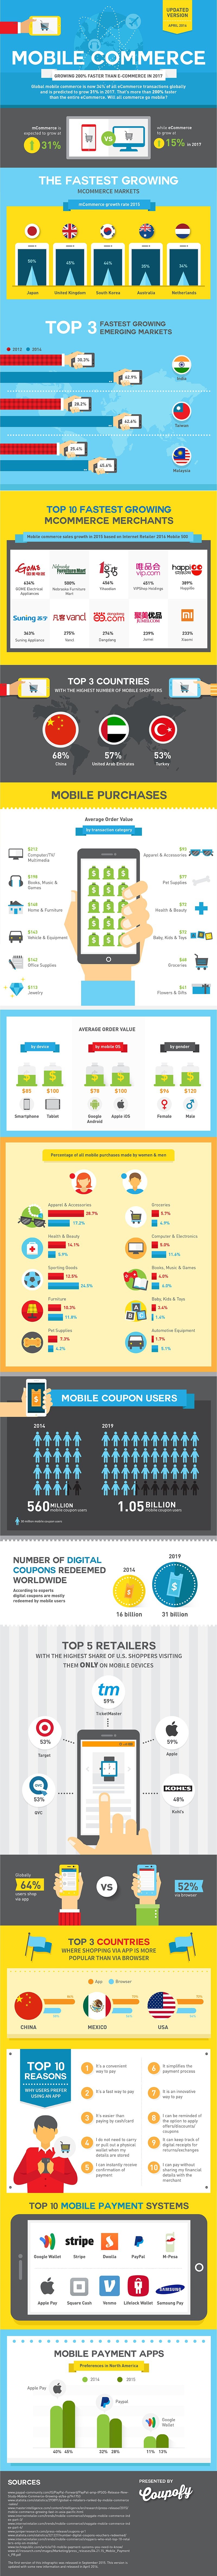 mobile-commerce-infographic.jpg